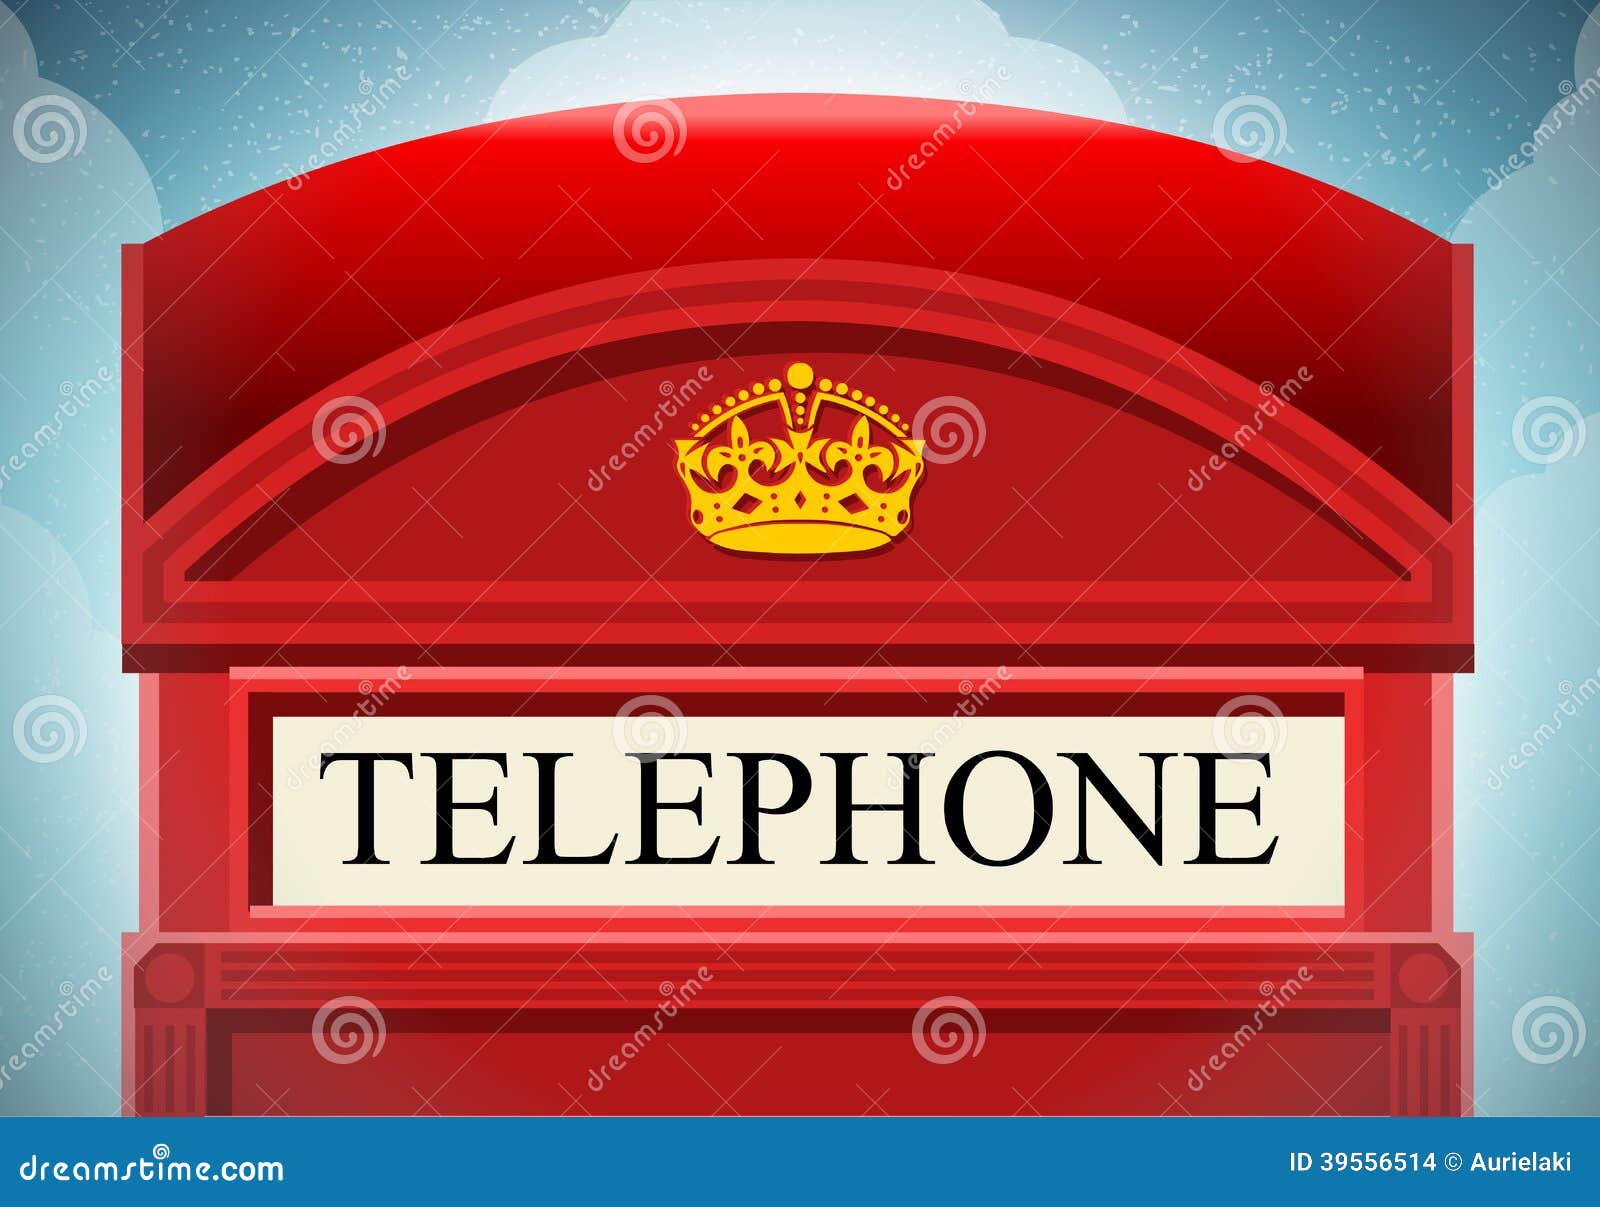 Анвап тубе на телефон. Корона на телефонной будке. Telephone надпись. Лондонская телефонная будка корона. Корона на английской телефонной будке.